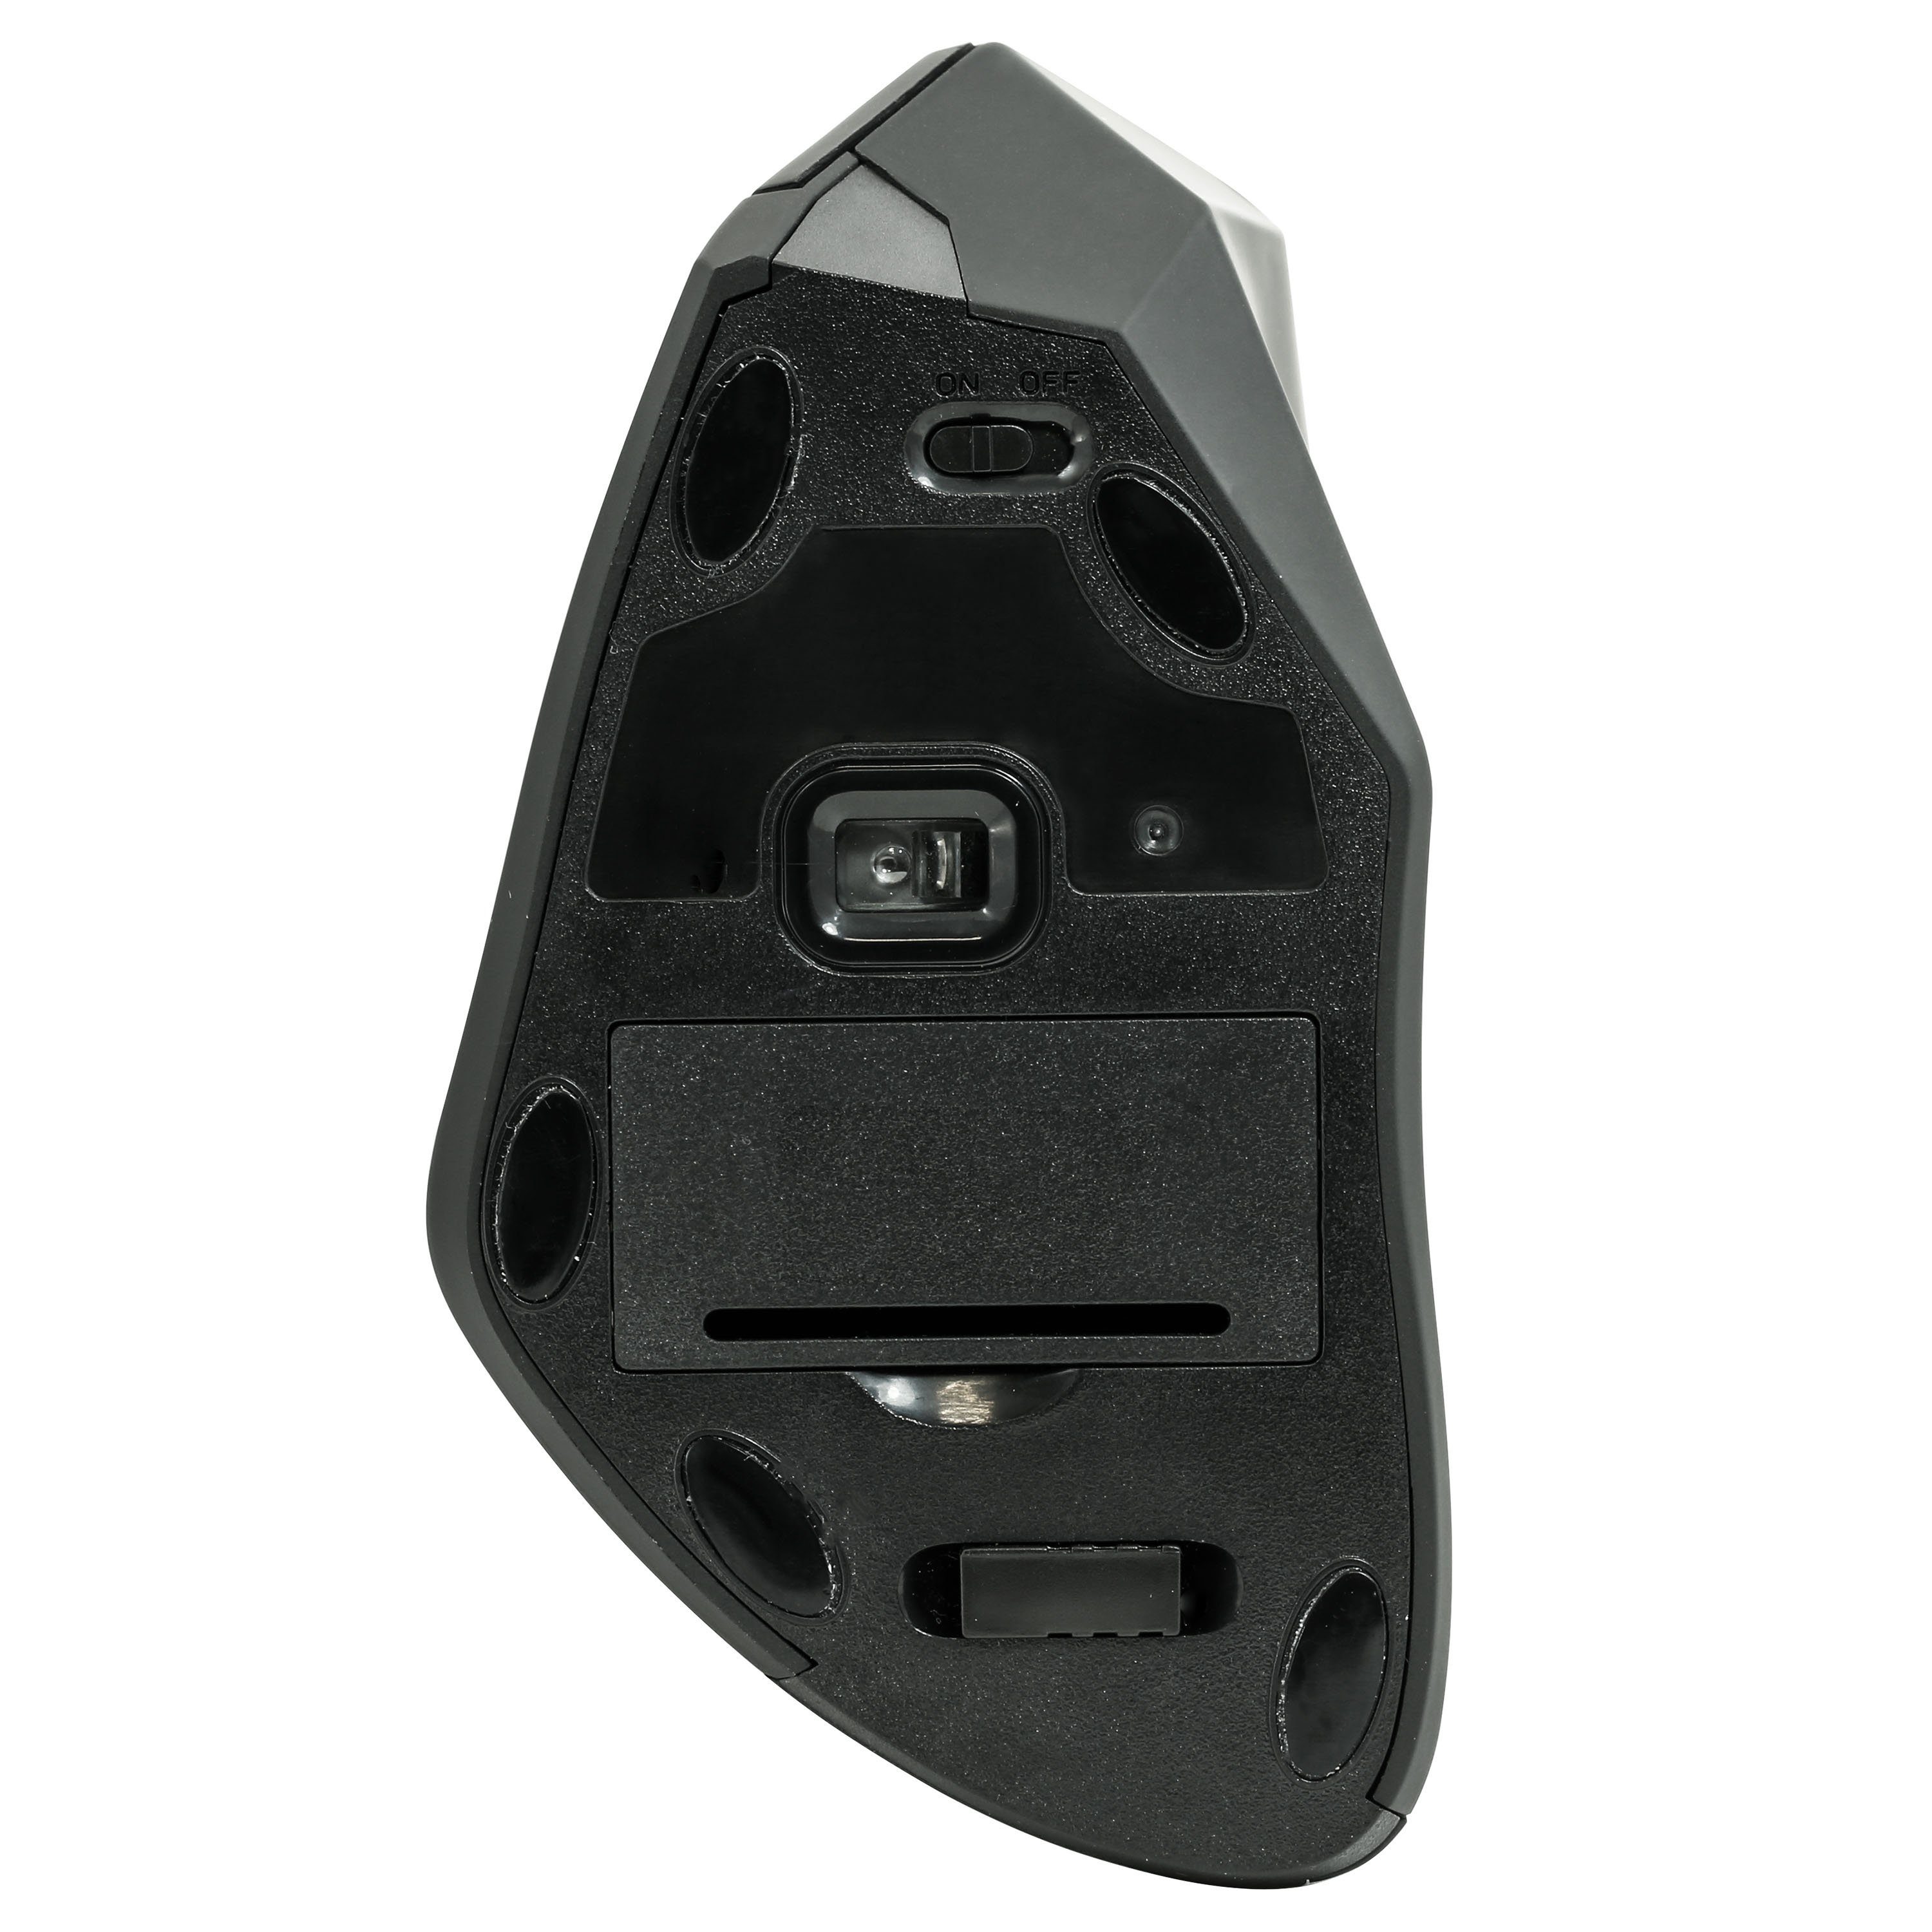 CSL ergonomische Vertikal 2,4 Mouse (Funk, GHz, gegen ergonomische RSI Maus Syndrom) Maus-/Tennisarm